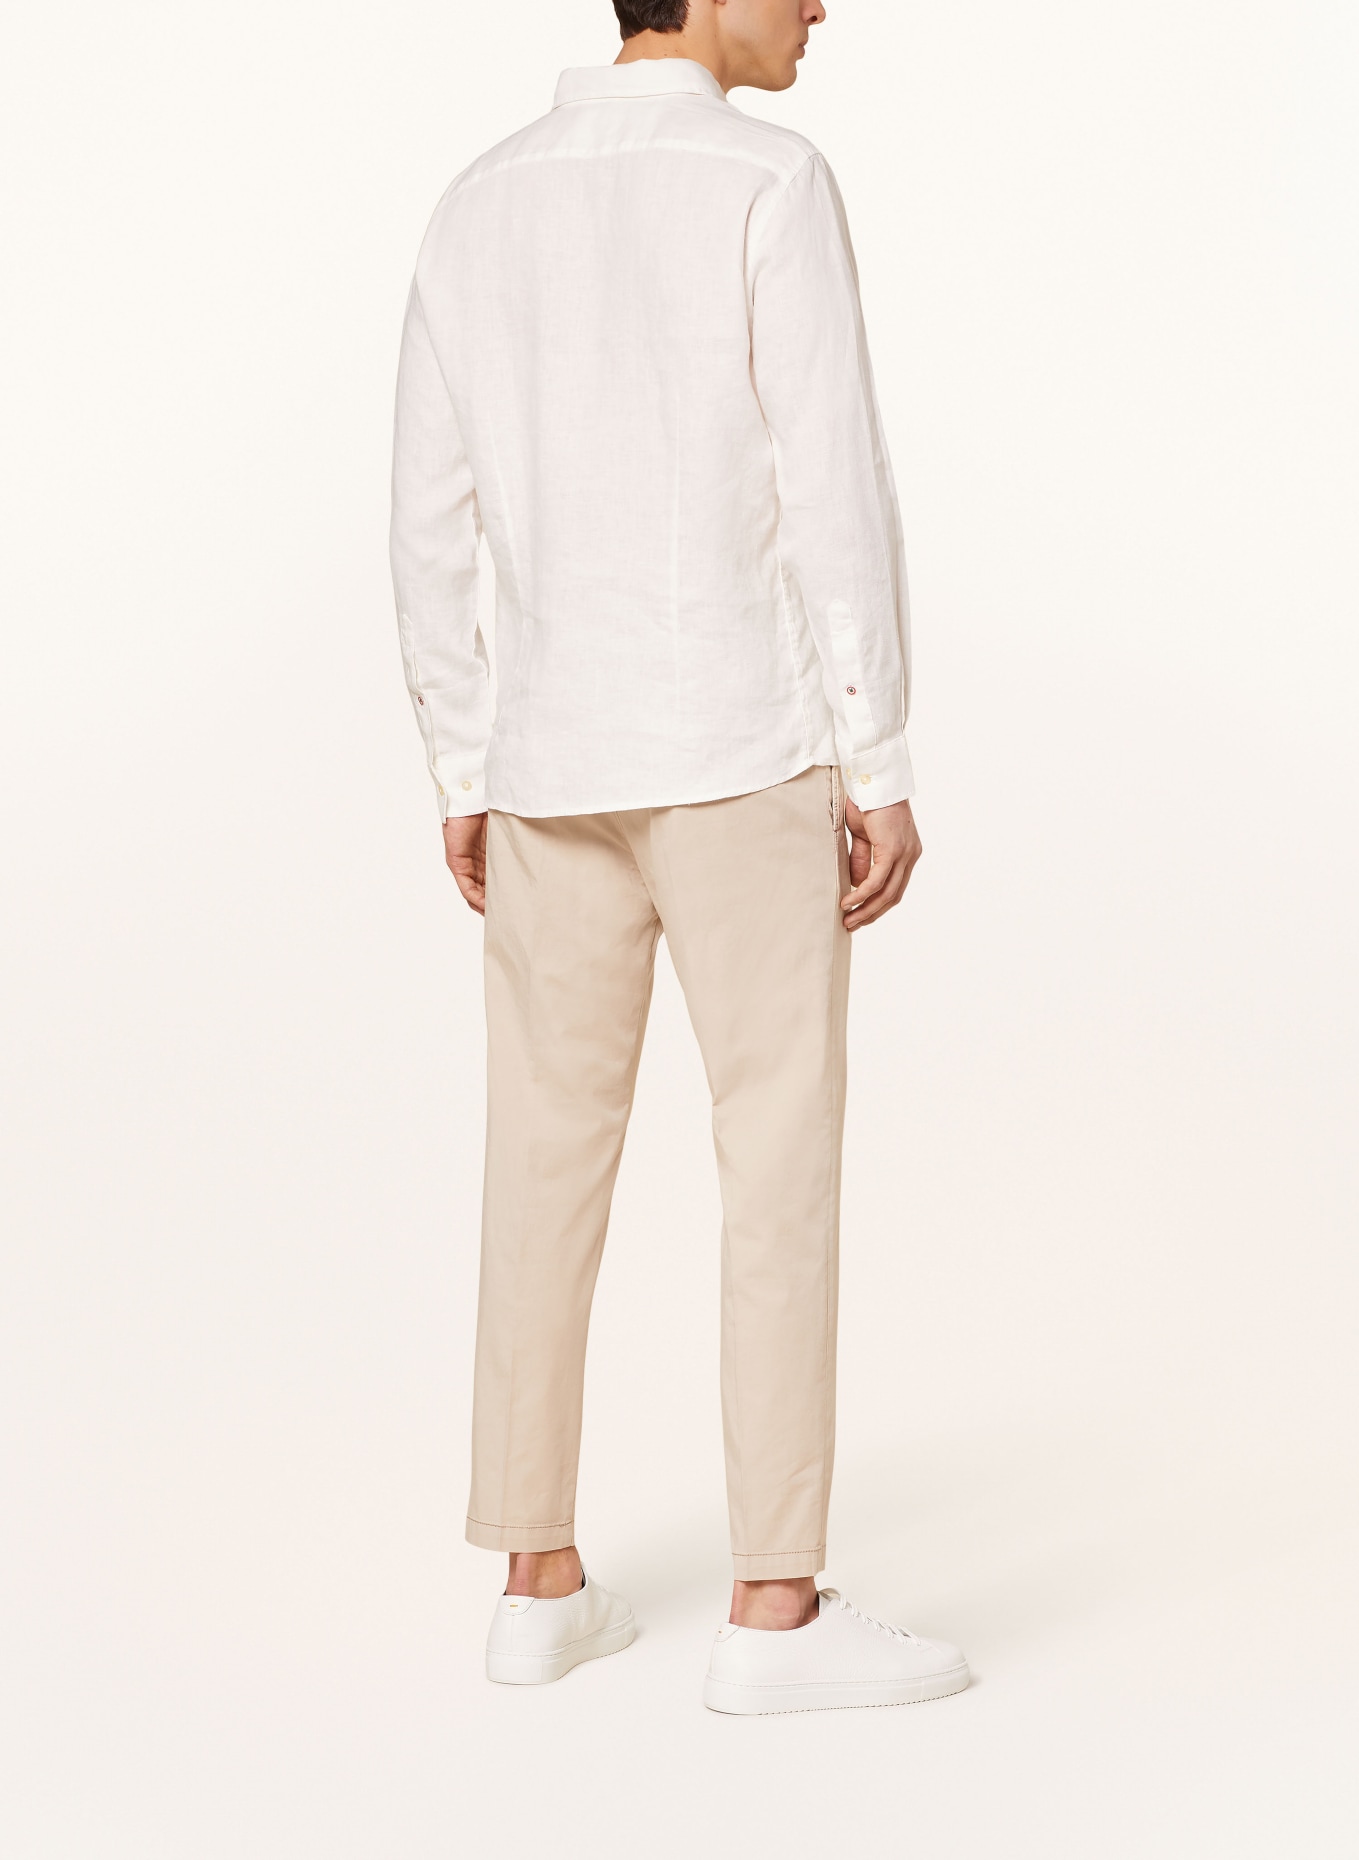 CINQUE Linen shirt CISTEVEN regular fit, Color: WHITE (Image 3)